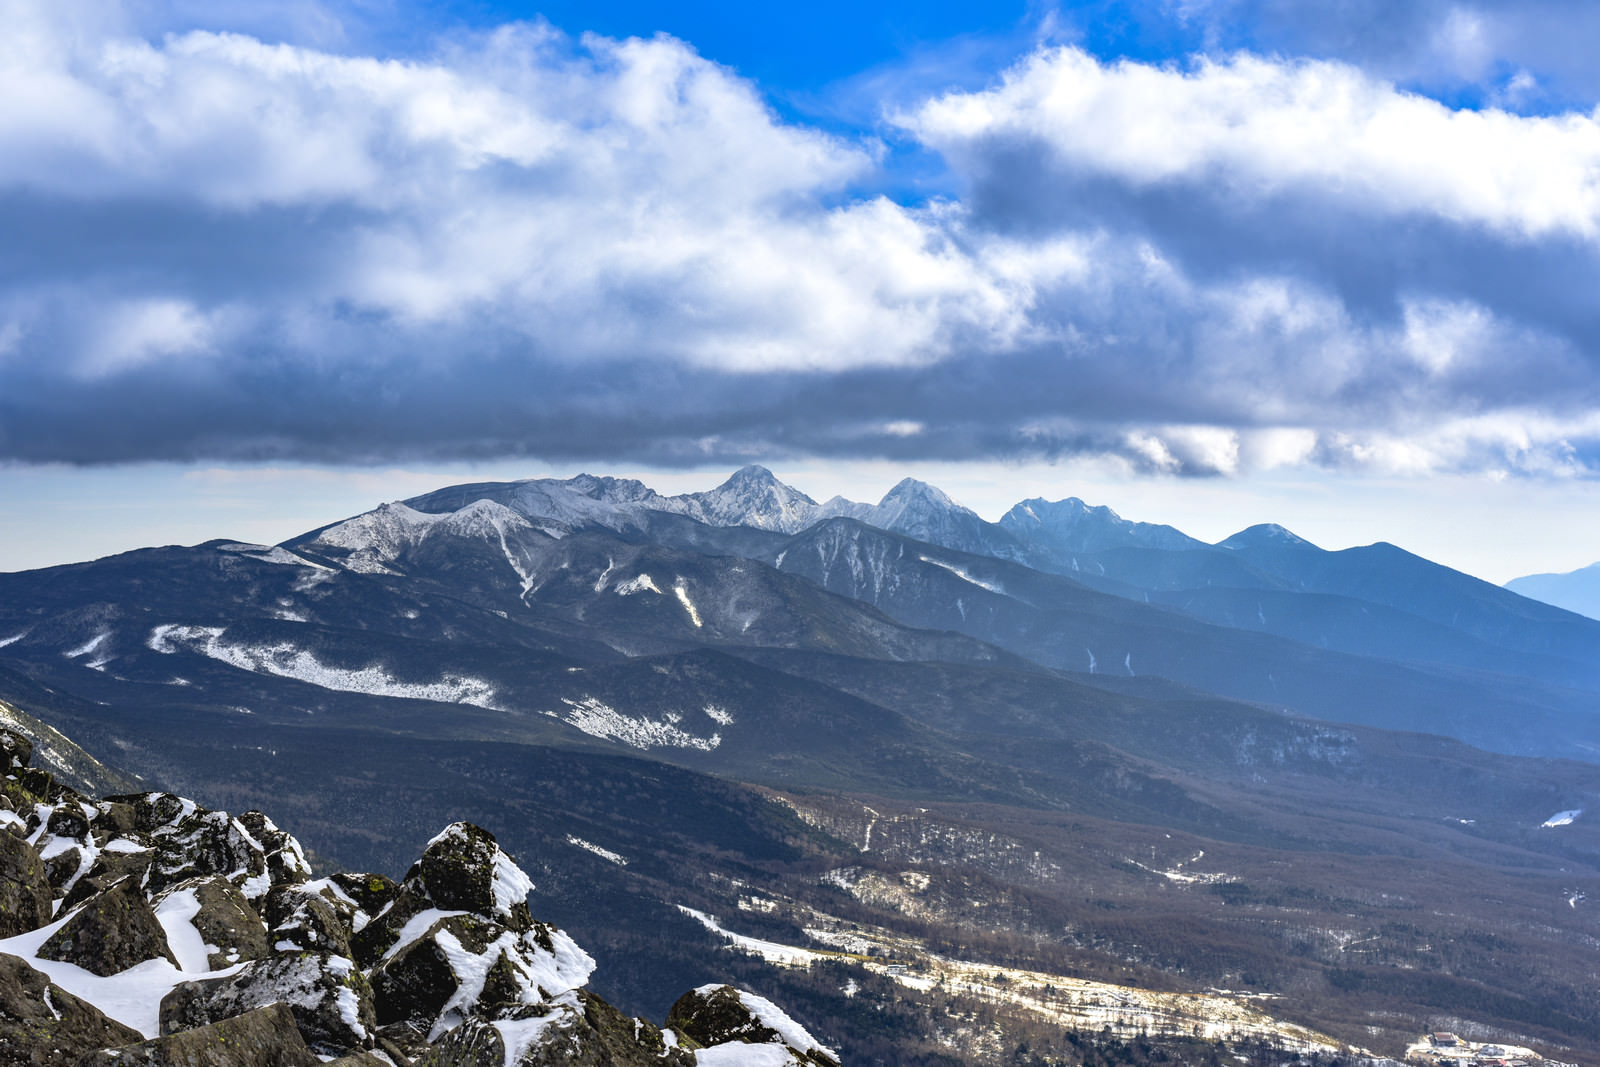 「蓼科山から見る八ヶ岳赤岳方面の景色 | フリー素材のぱくたそ」の写真